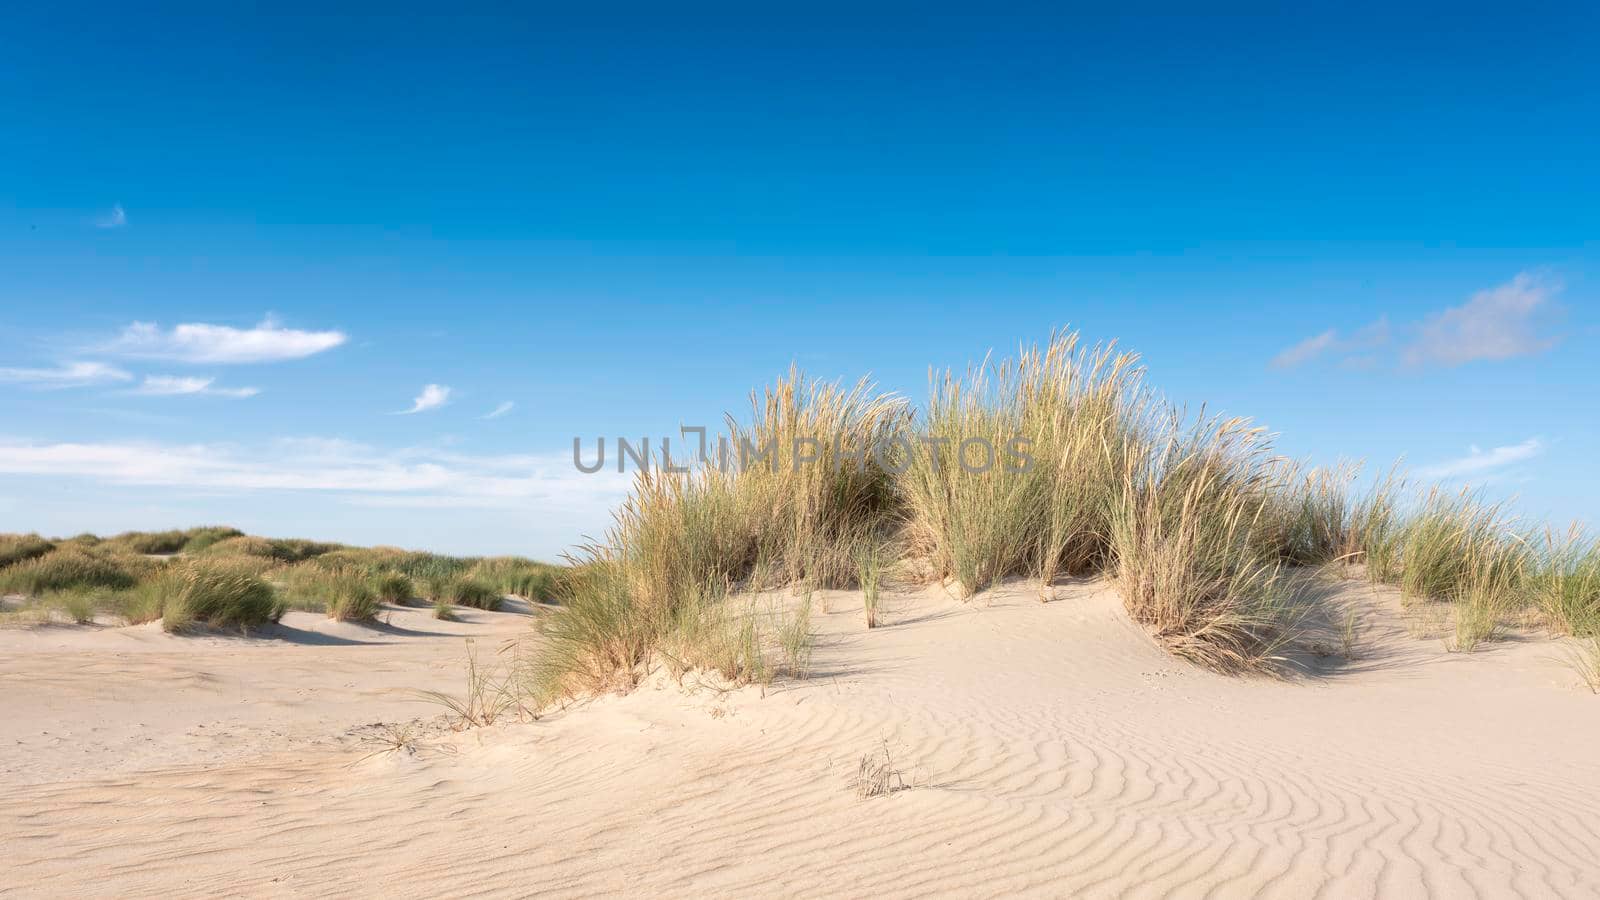 dutch wadden islands have many deserted sand dunes uinder blue summer sky in the netherlands by ahavelaar